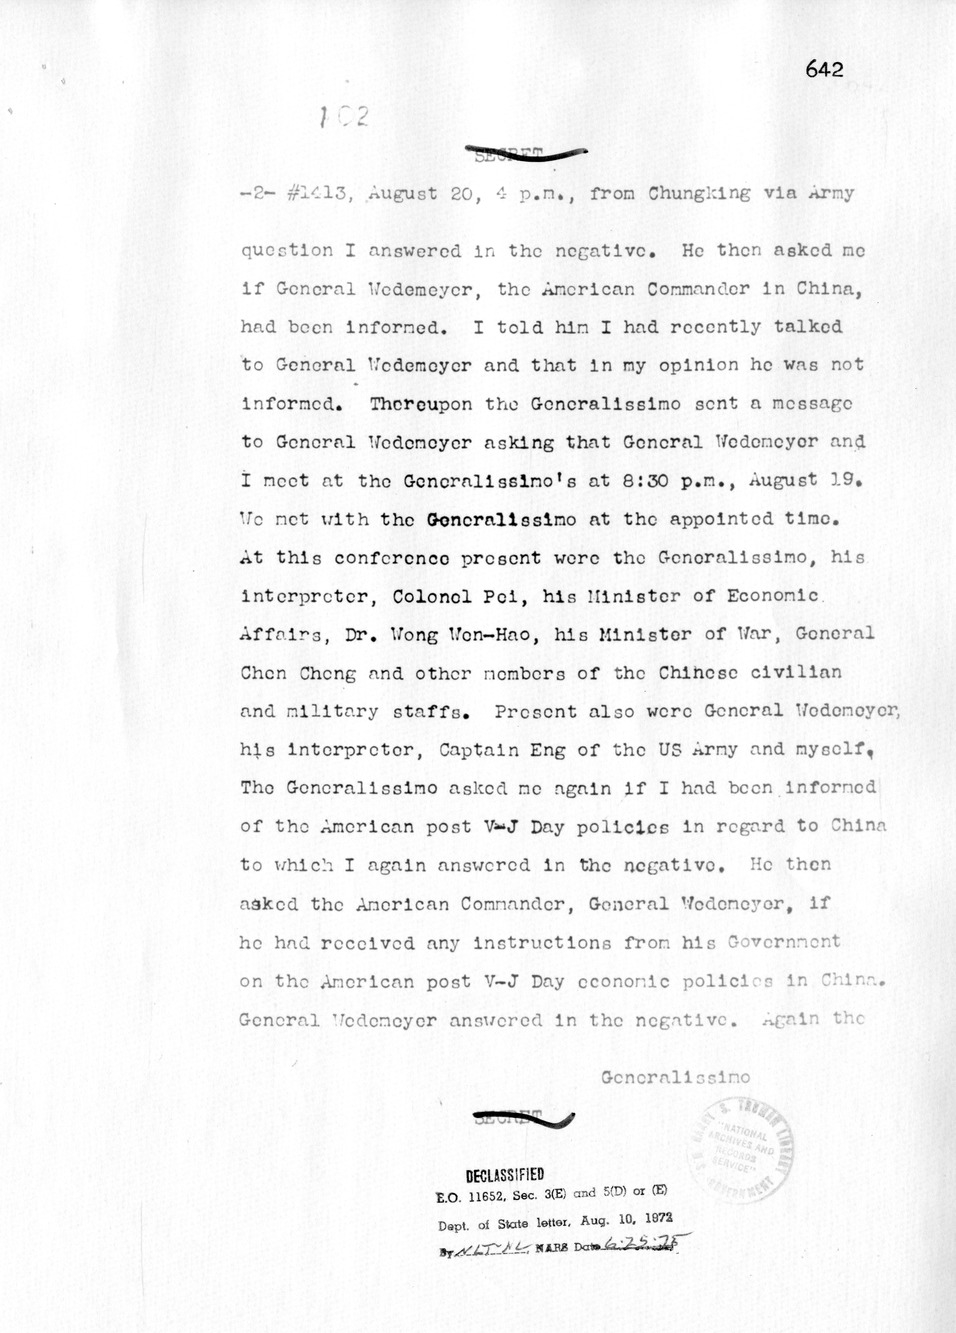 Memorandum from Patrick Hurley to Secretary of State Edward Stettinius